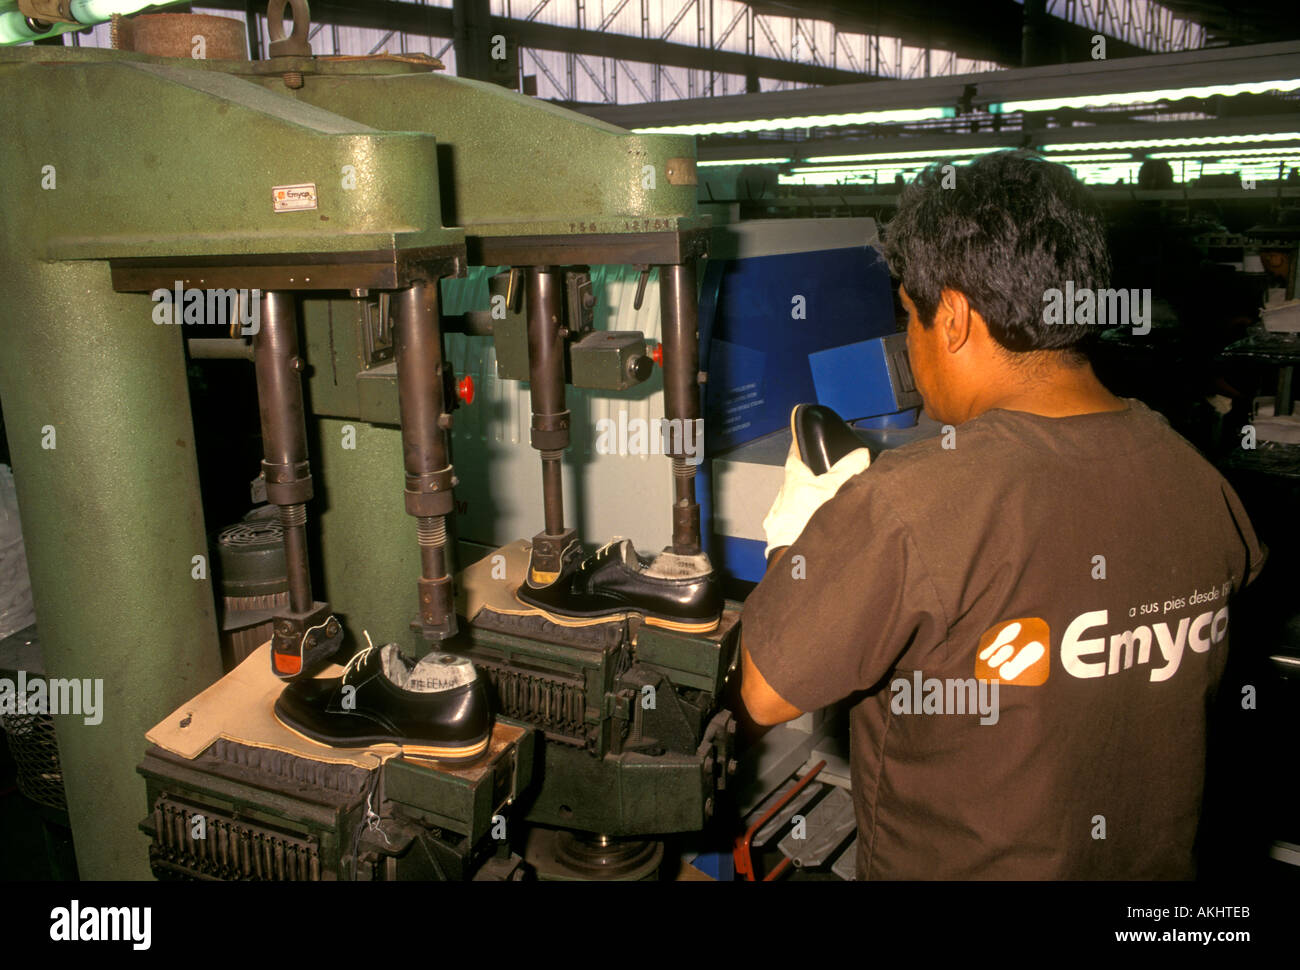 Mexicana, hombre, masculino, empleado en el trabajo, el trabajador, el  trabajo, la fábrica de calzado emyco, fábrica de calzado, León, Guanajuato,  México Fotografía de stock - Alamy